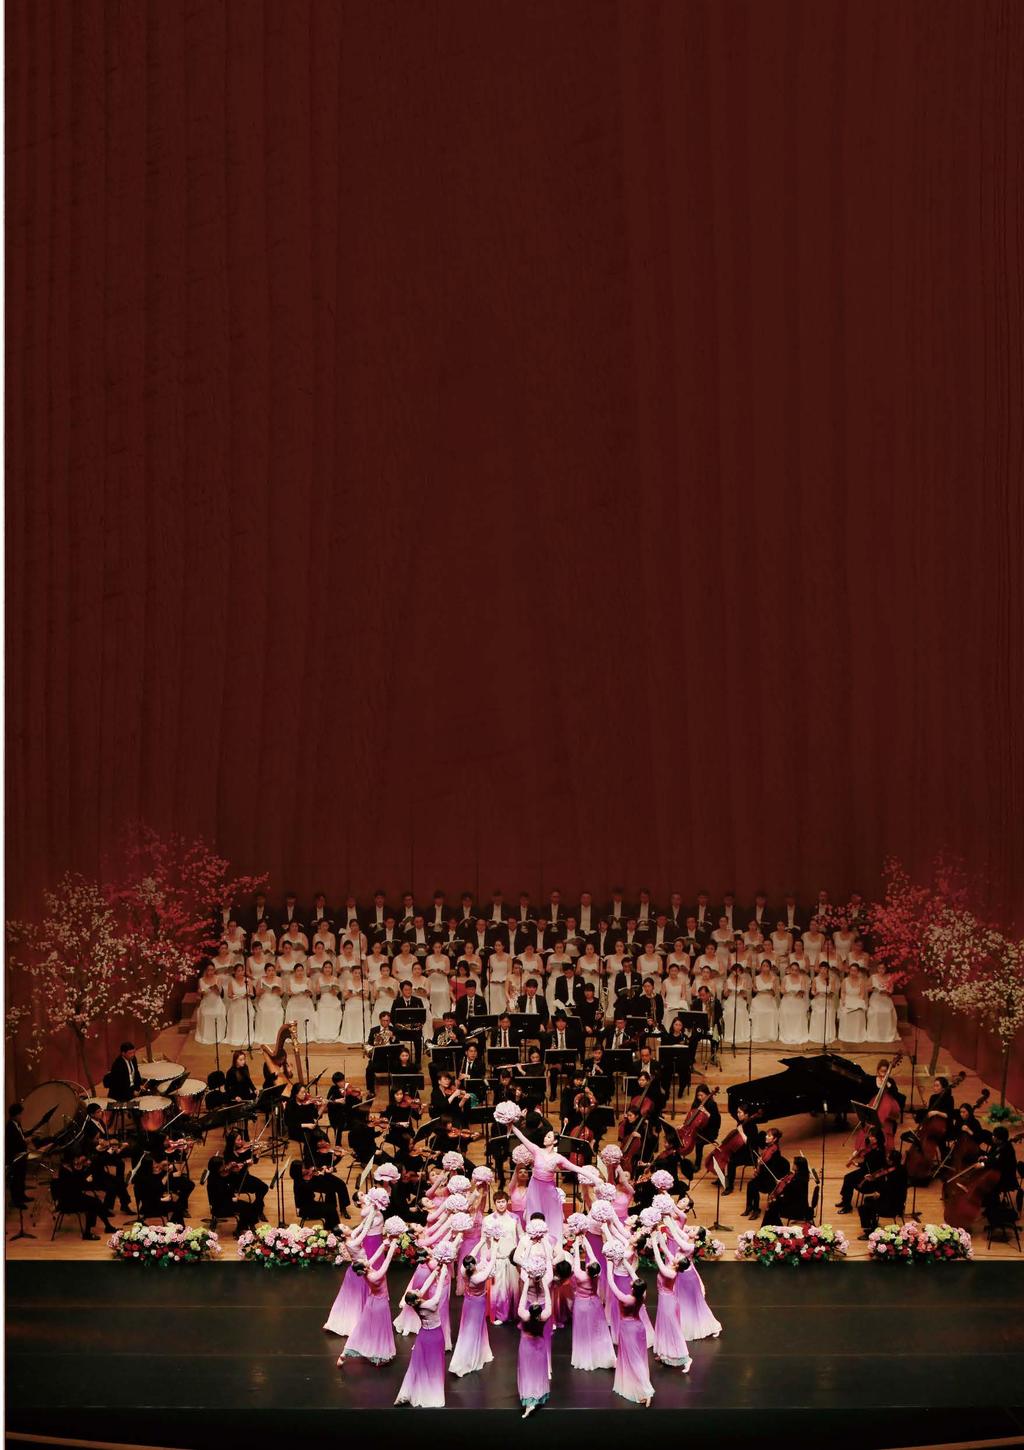 지역과소통하며세계로나아가는창원시립예술단 Changwon Performing Art Group 창원시립교향악단 Changwon Philharmonic Orchestra 창원시립합창단